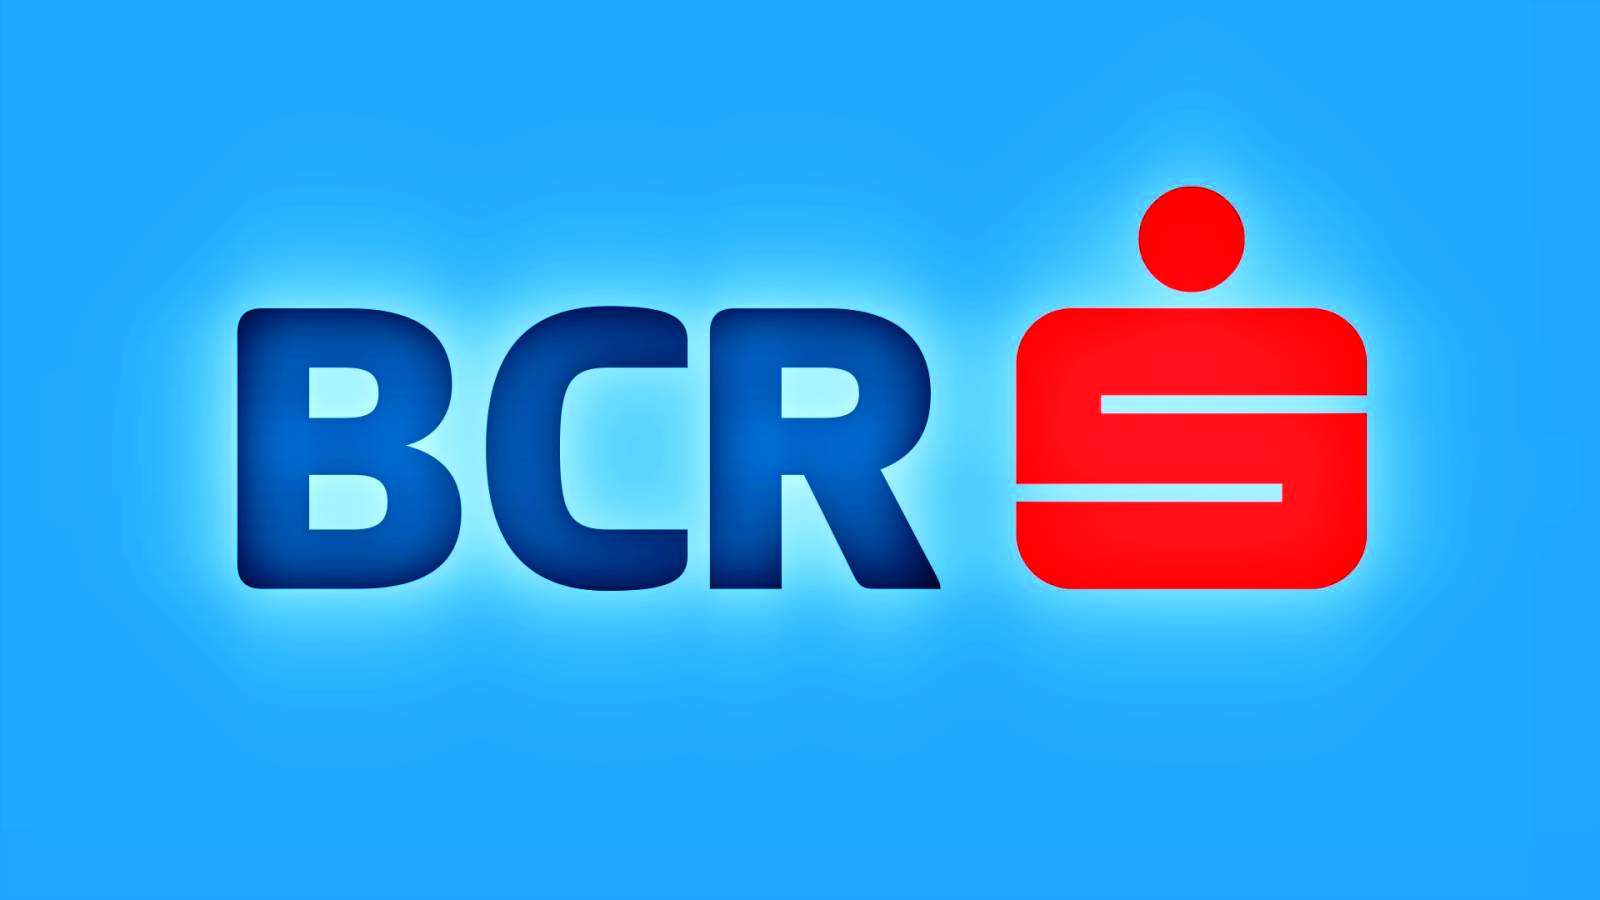 BCR Roumanie avertit DNSC concernant une nouvelle cyberattaque